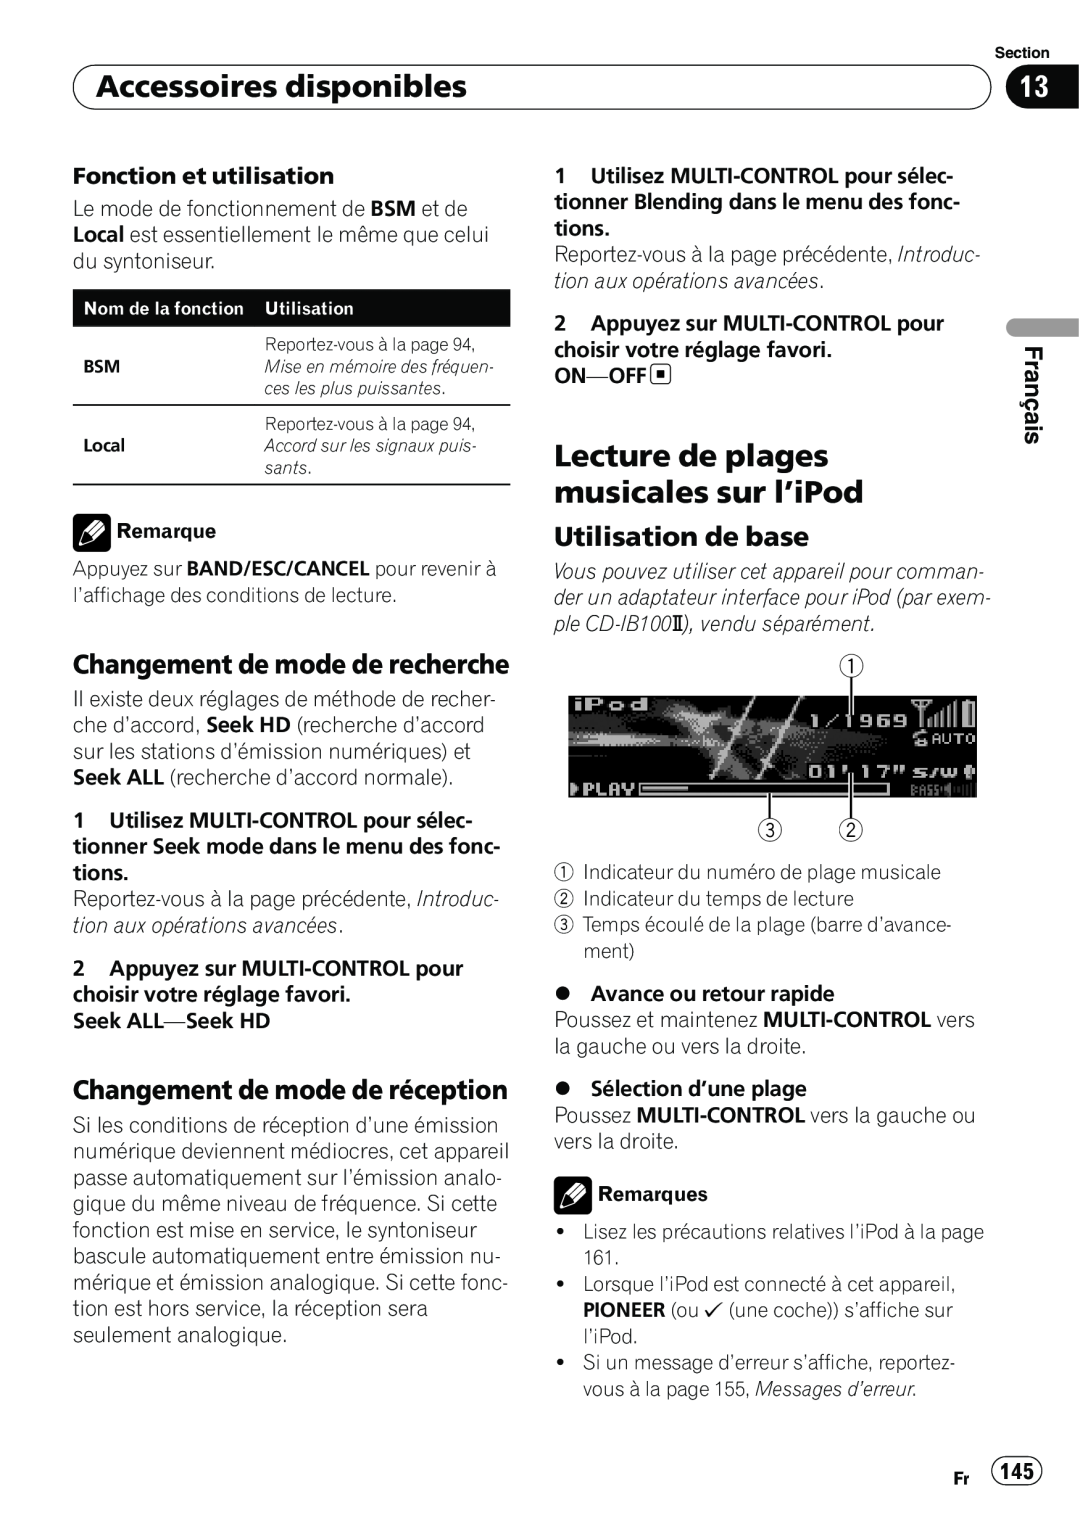 Pioneer DEH-P7100BT Changement de mode de recherche, Changement de mode de réception, Accessoires disponibles, Français 